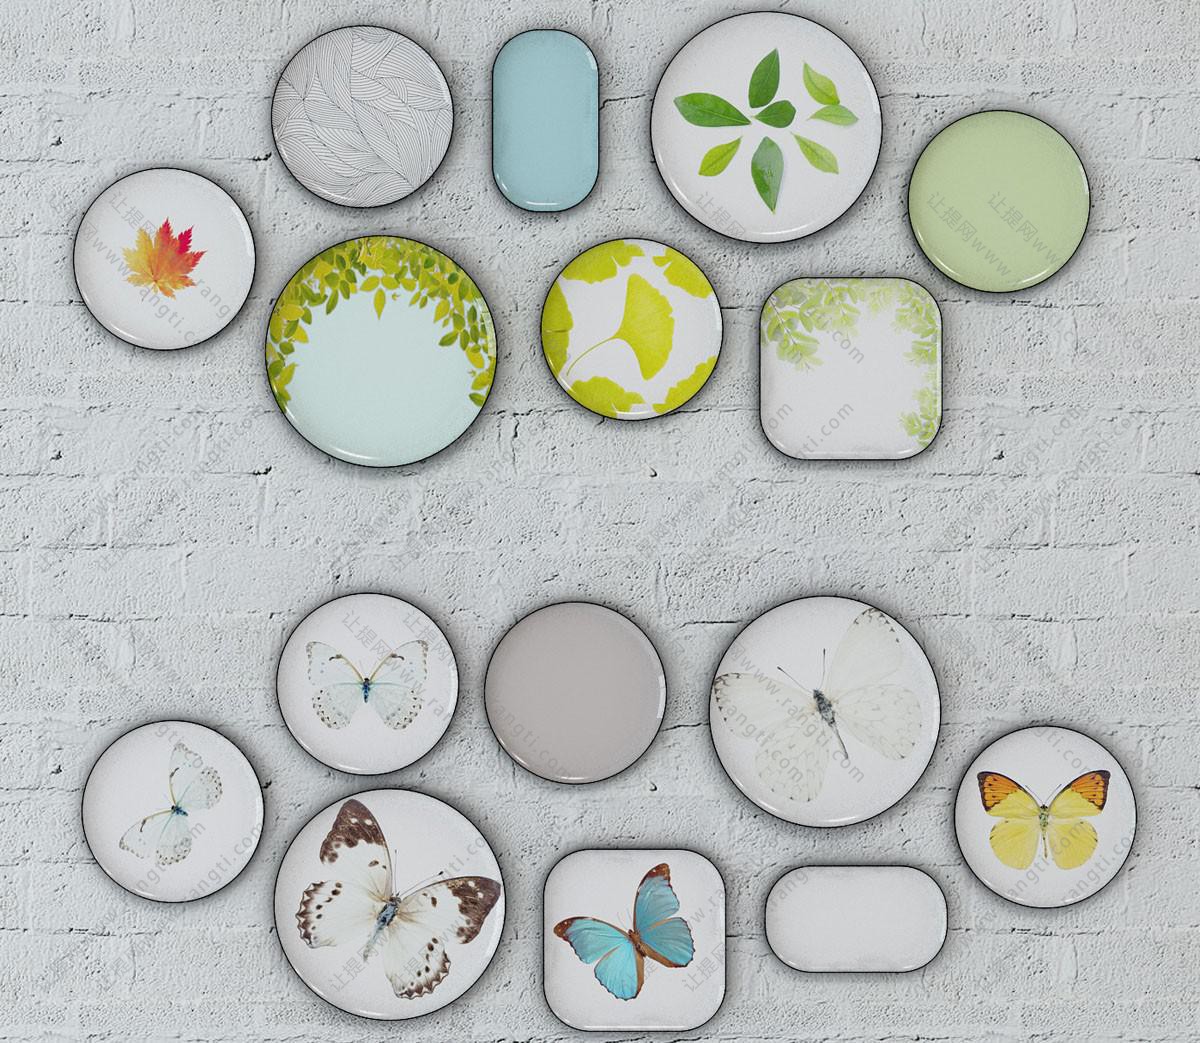 植物、蝴蝶图案盘子墙饰、挂件